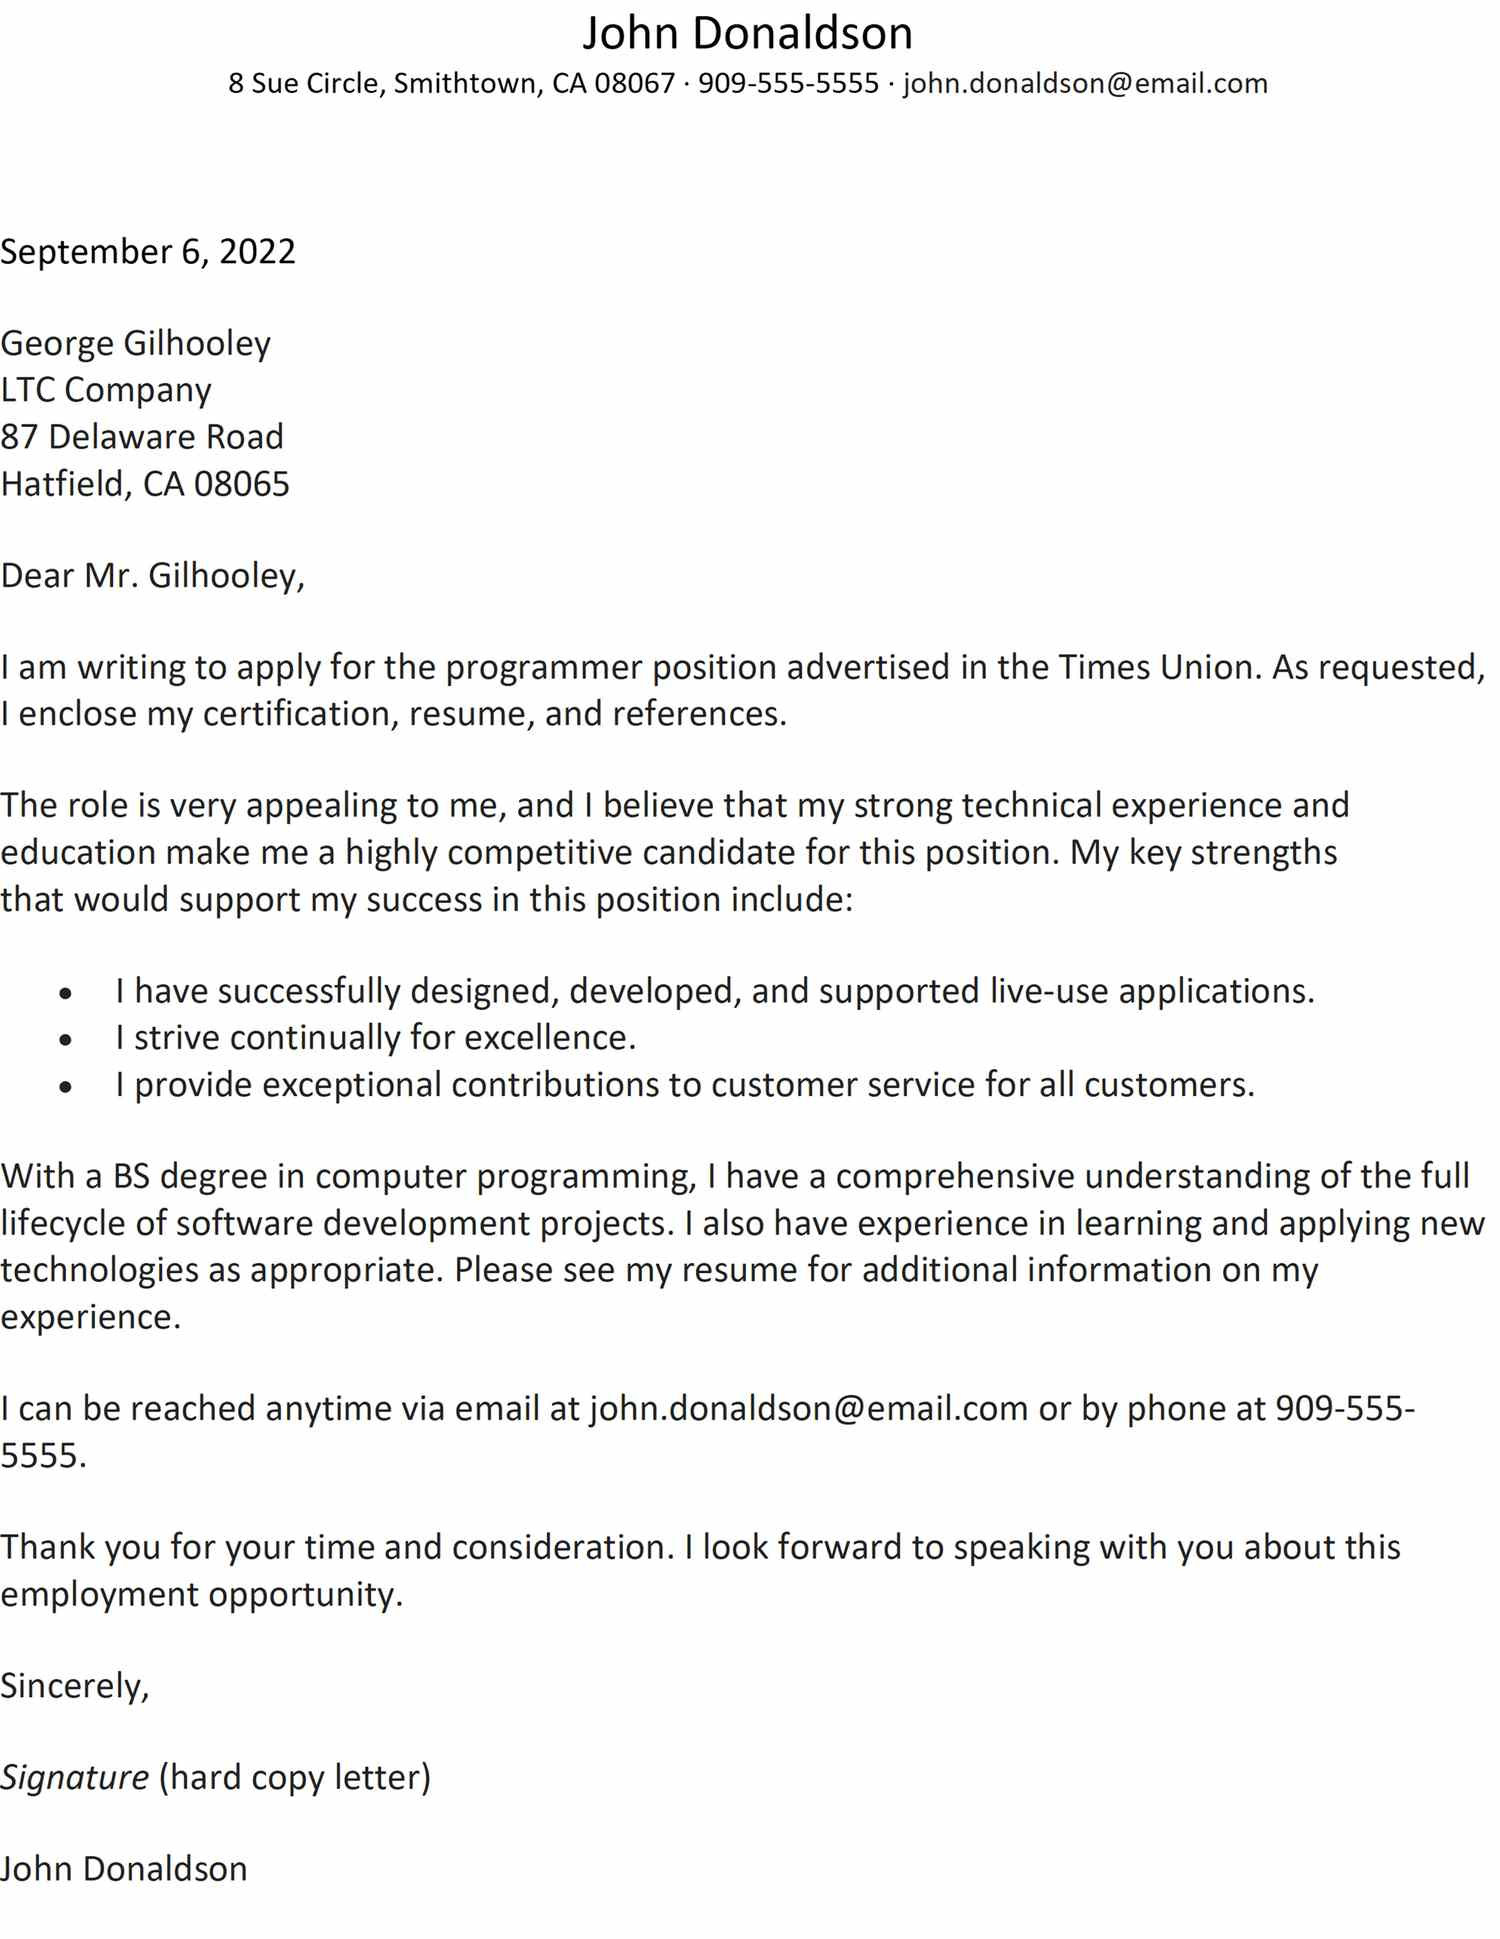 Sample Cover Letter for Resume Monster Sample Cover Letter for A Job Application